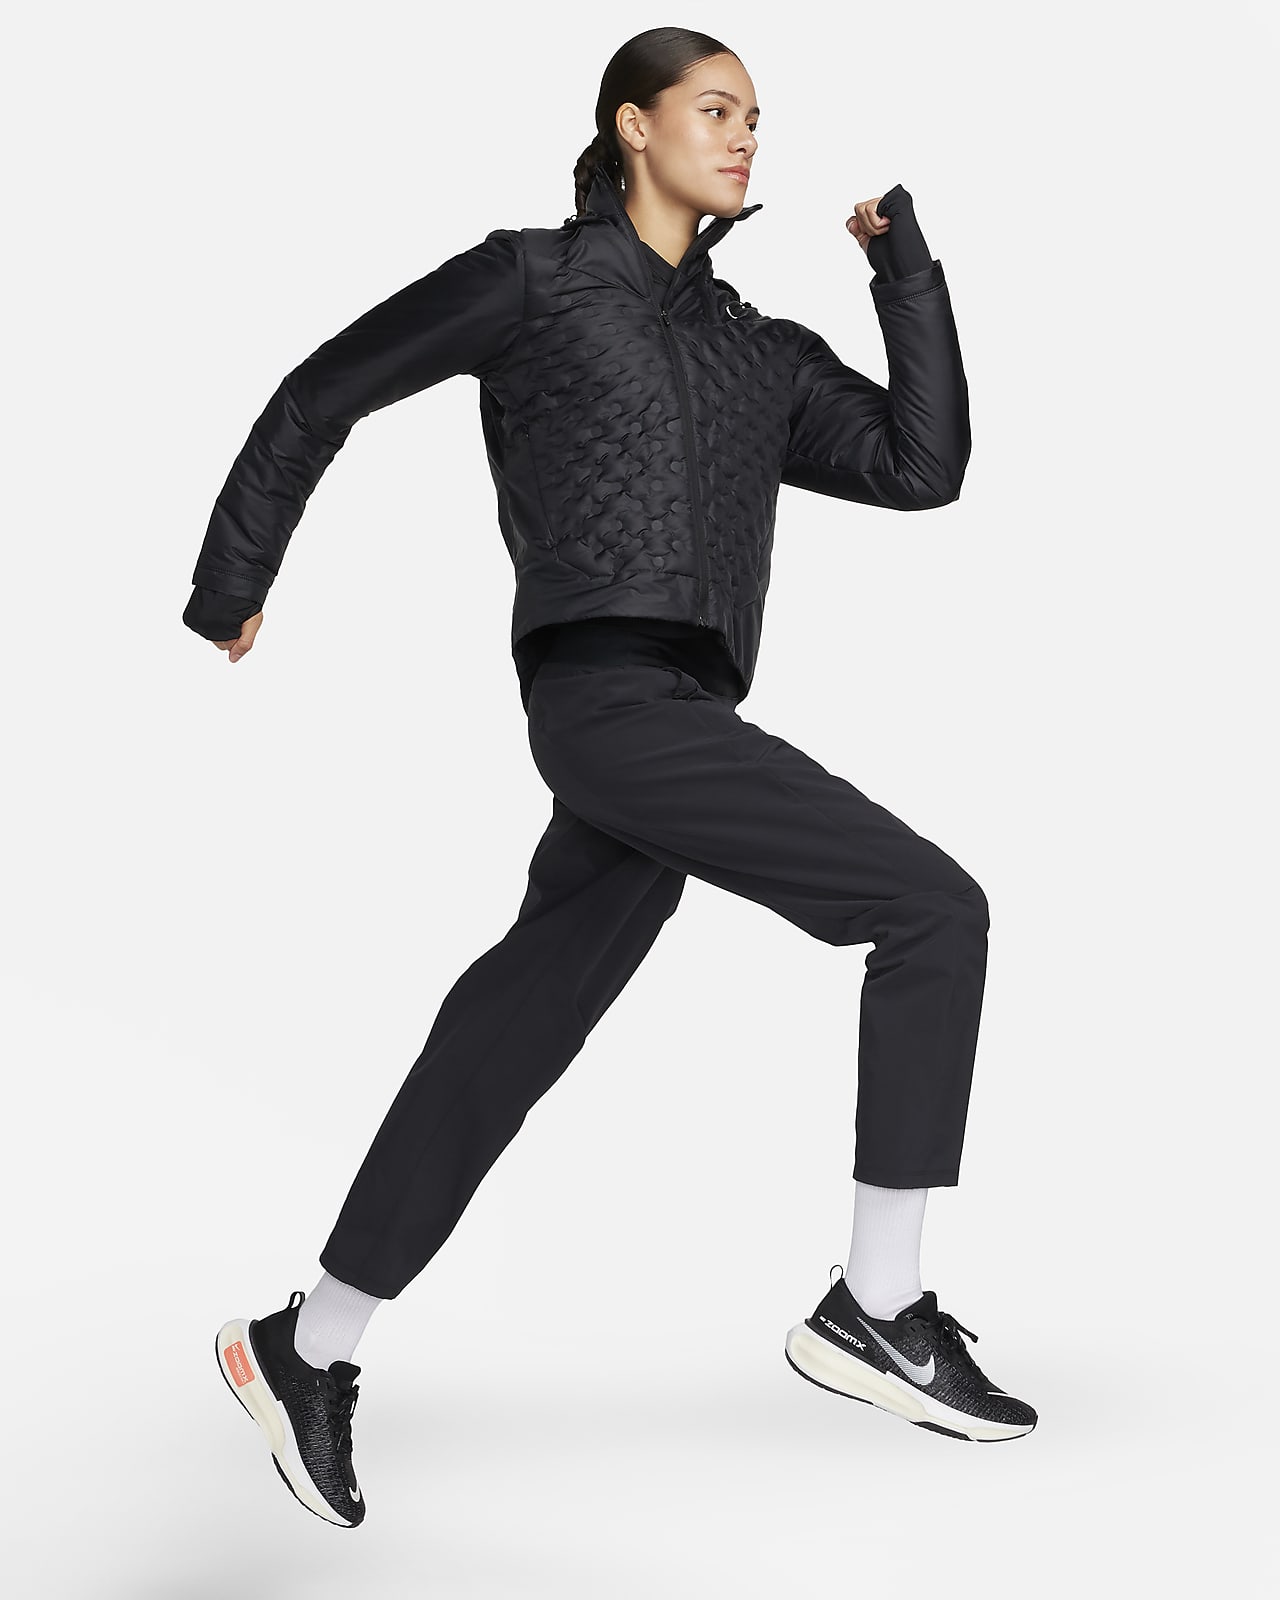 Nike Aeroloft M vêtement running homme : infos, avis et meilleur